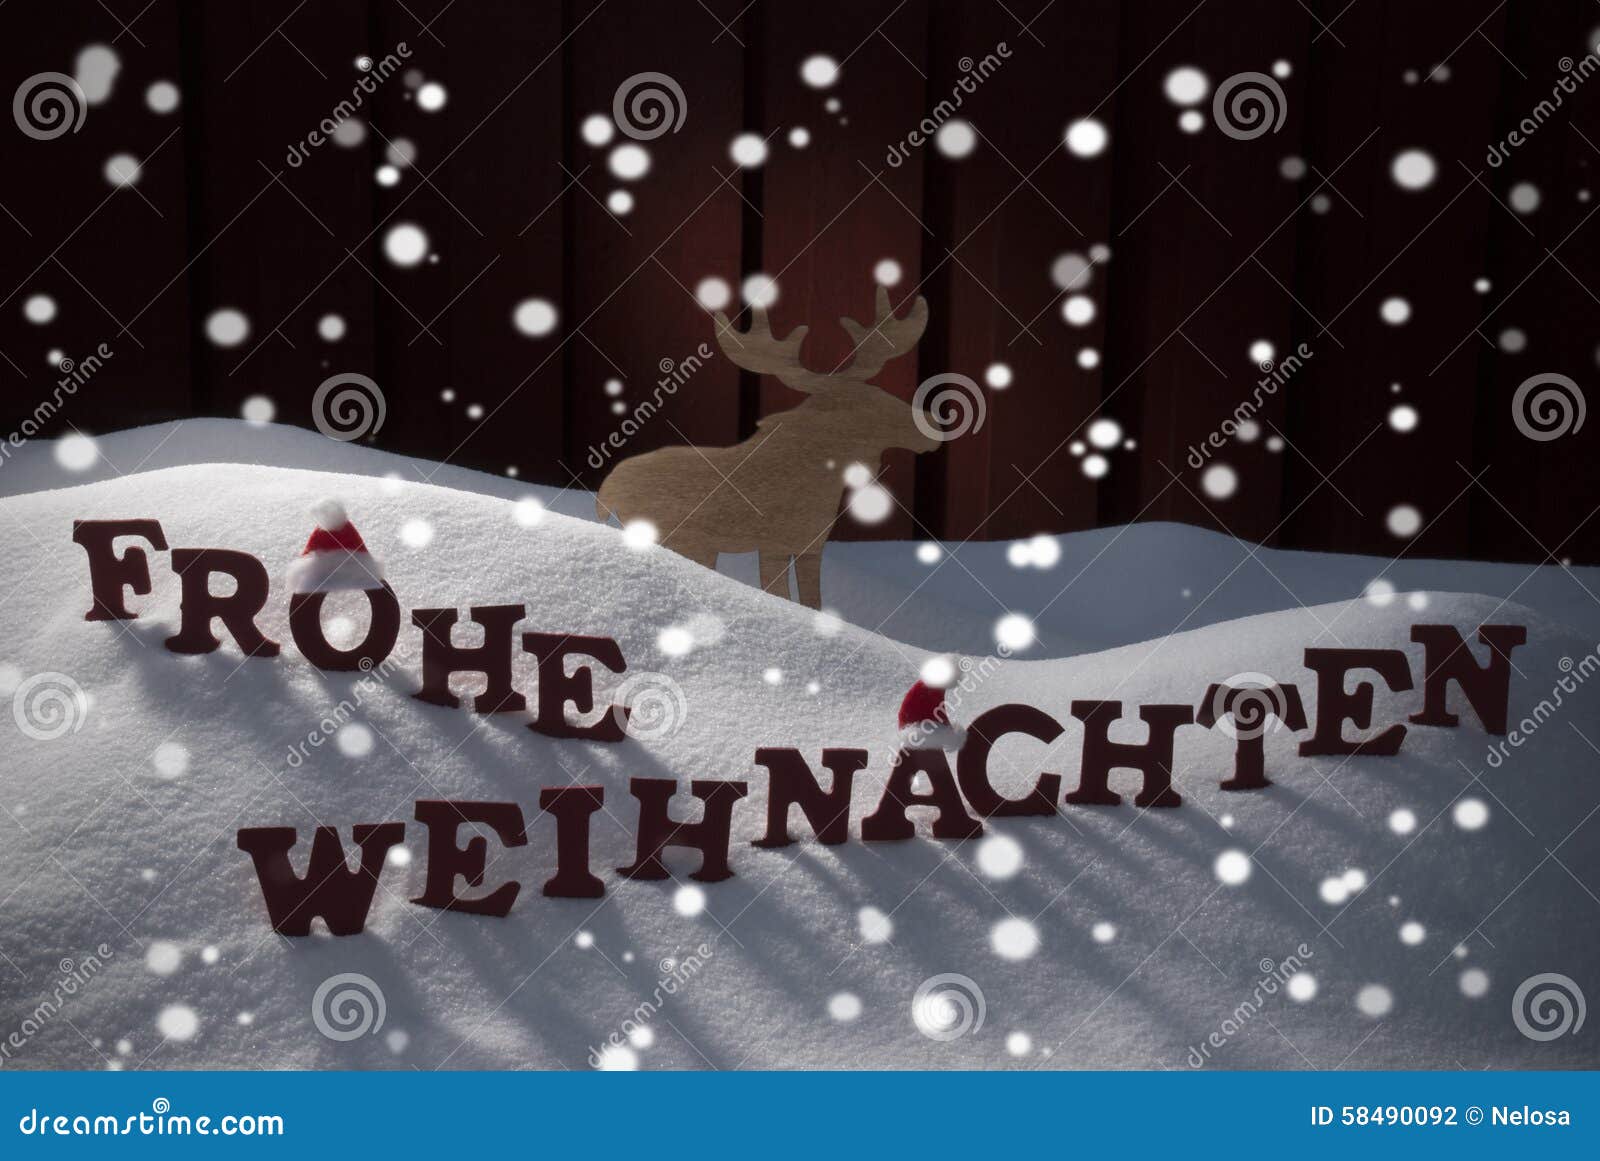 La Parola Natale Significa.Frohe Weihnachten Significa Le Alci Di Buon Natale Fotografia Stock Immagine Di Rustic Atmosfera 58490092